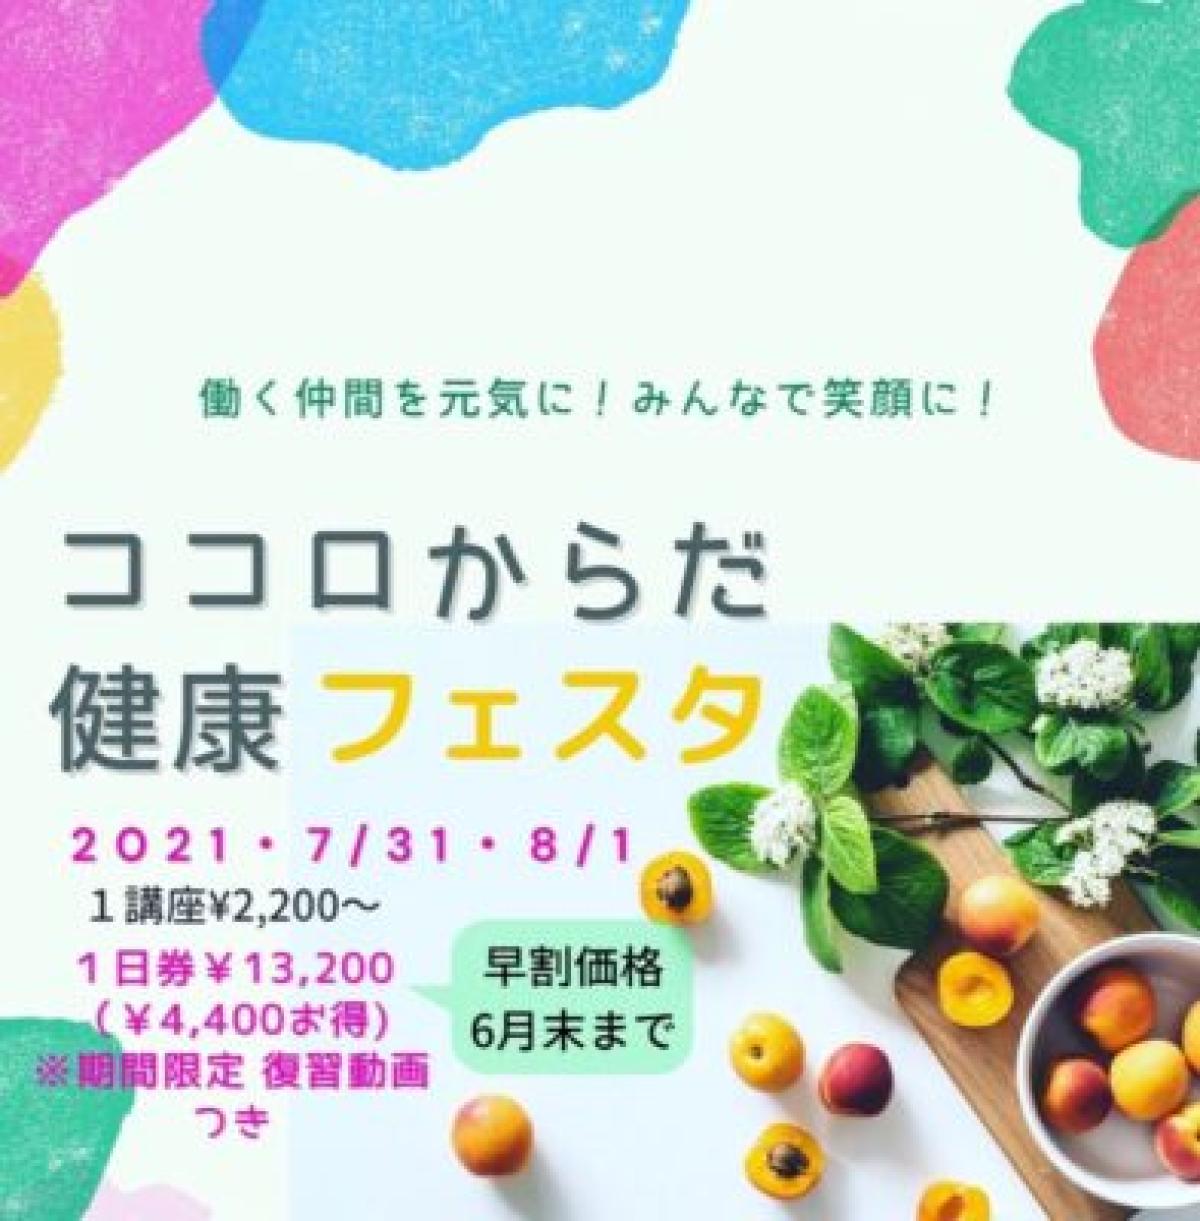 栄養学の資格「栄養 コンシェルジュ」を取得したシナプソロジー インストラクター 袴田雅江さんが、ココロからだ健康フェスタにて講座の講師を務めます